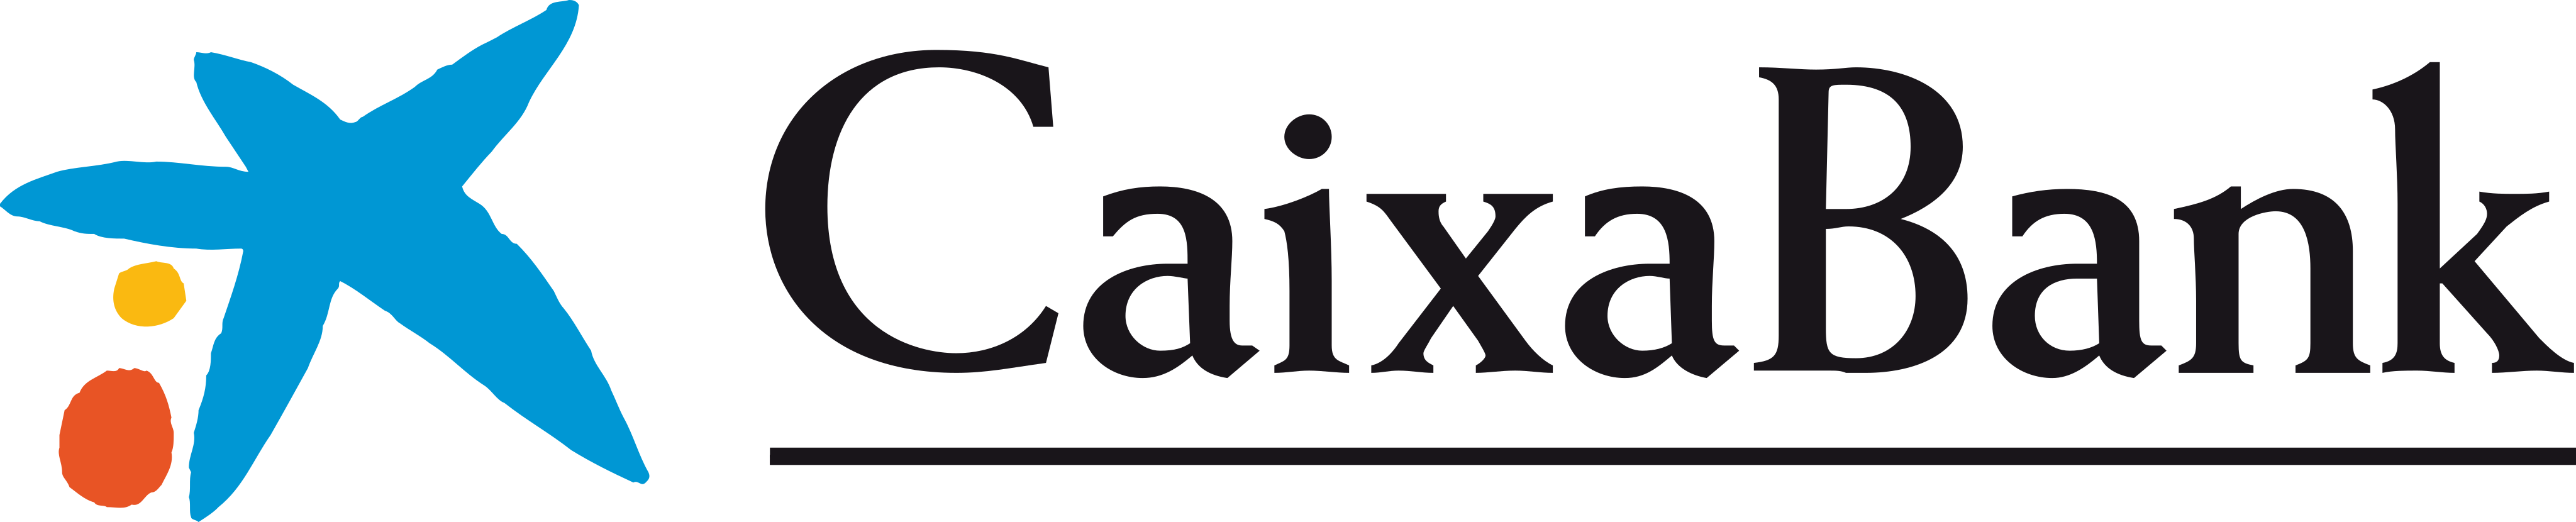 la caixa bank logo - La Caixa Bank Logo